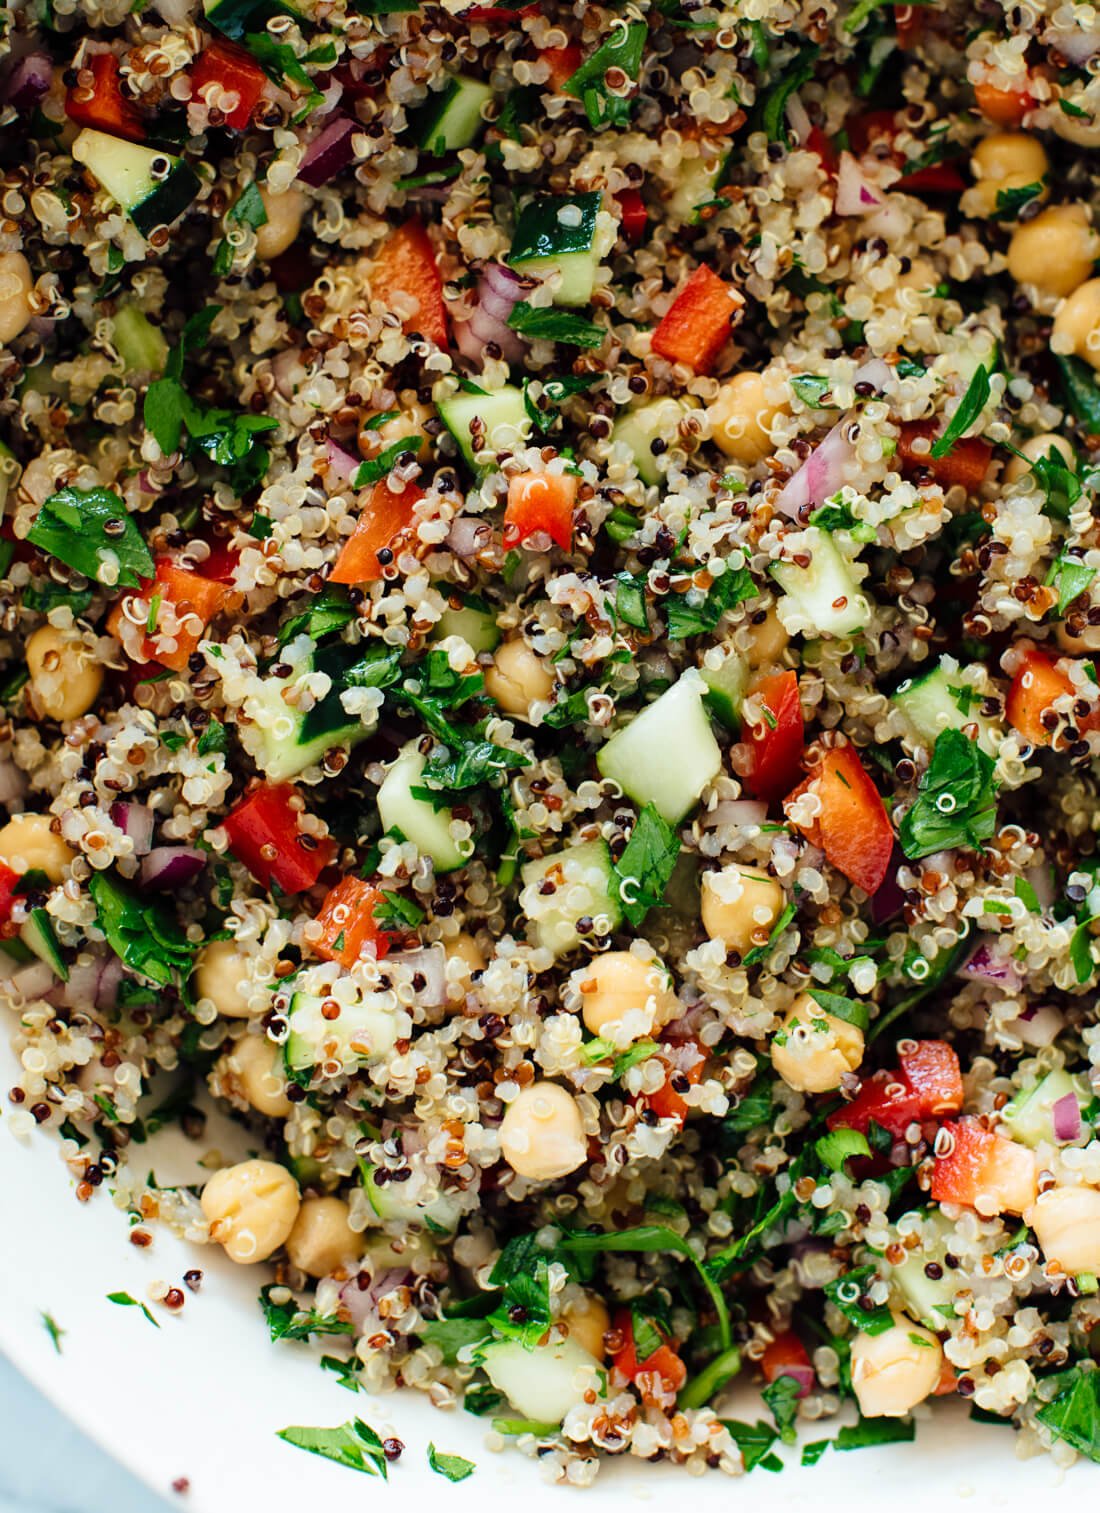 go-to quinoa salad recipe